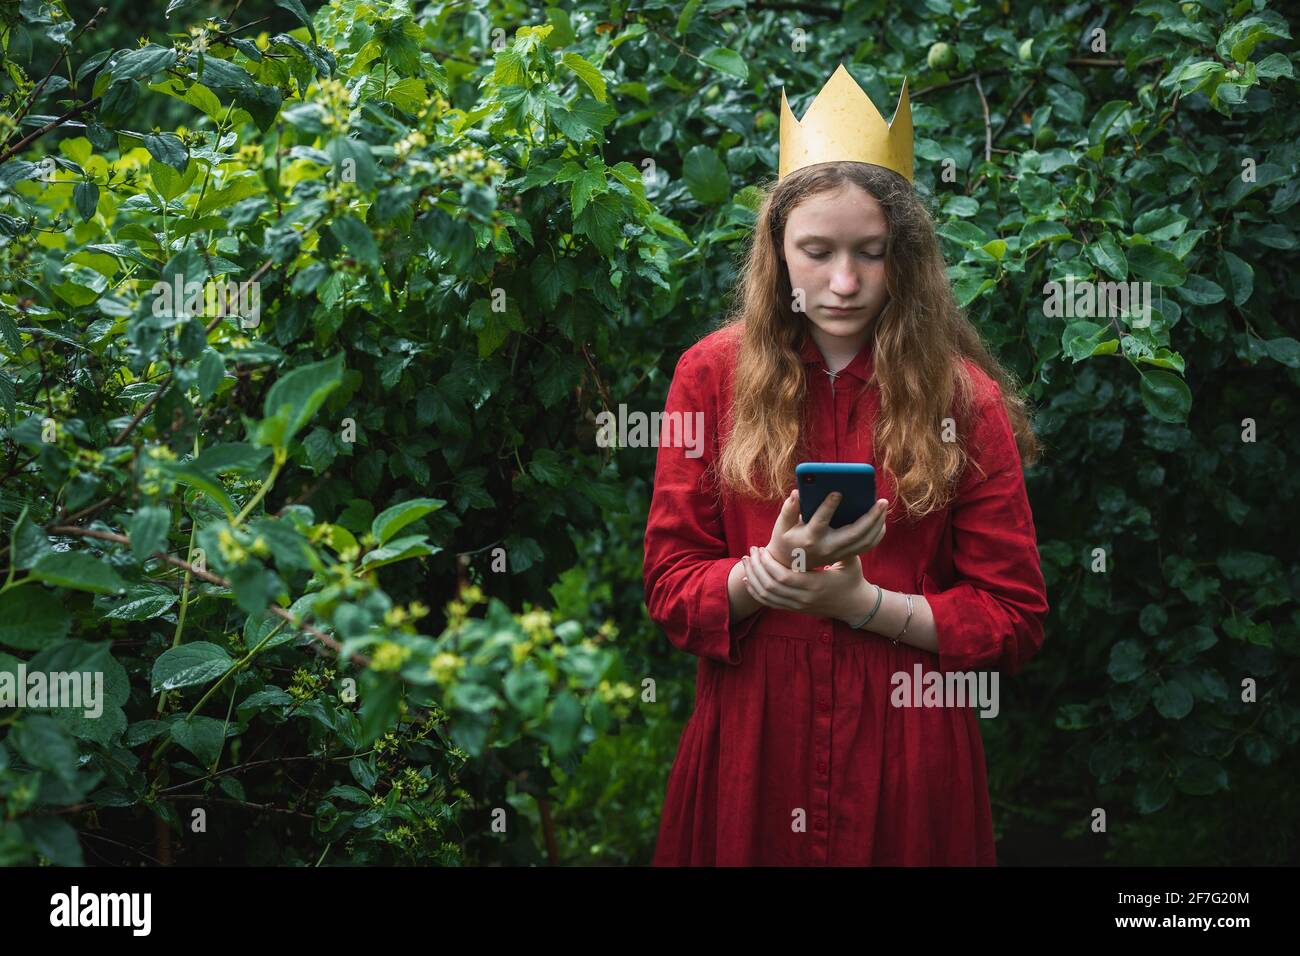 Presteen ragazza che indossa abito rosso e corona di carta in piedi giardino bagnato utilizzando il telefono Foto Stock